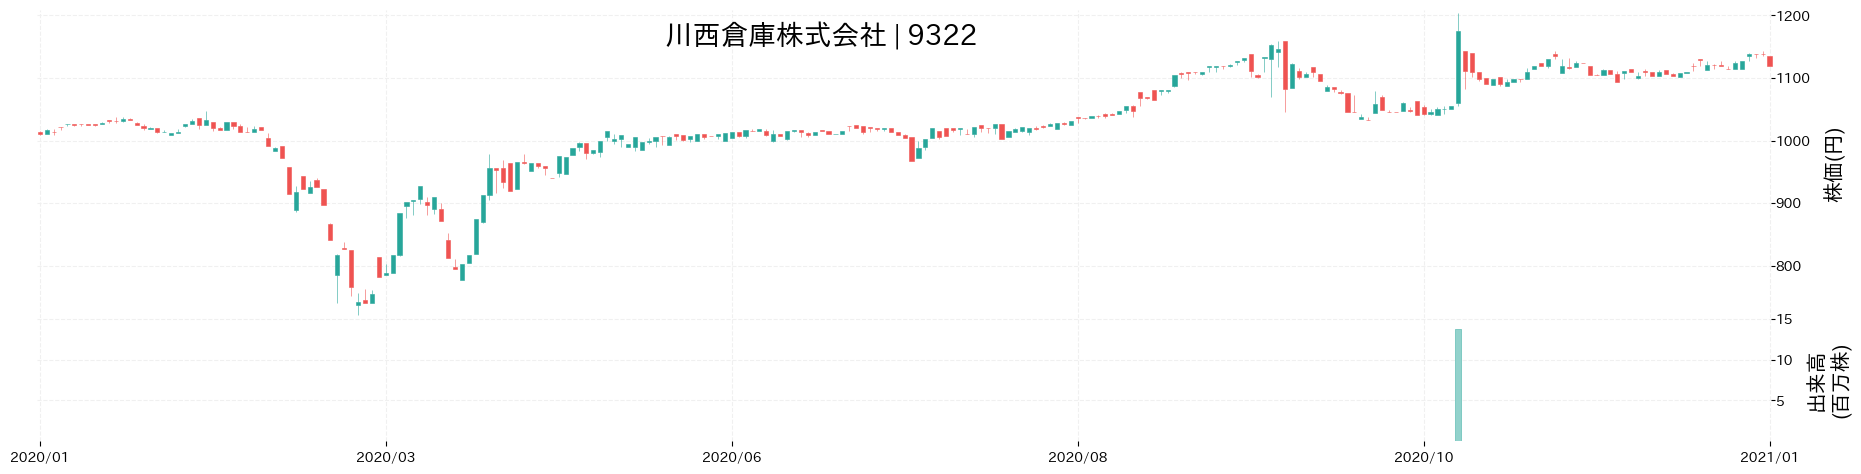 川西倉庫の株価推移(2020)